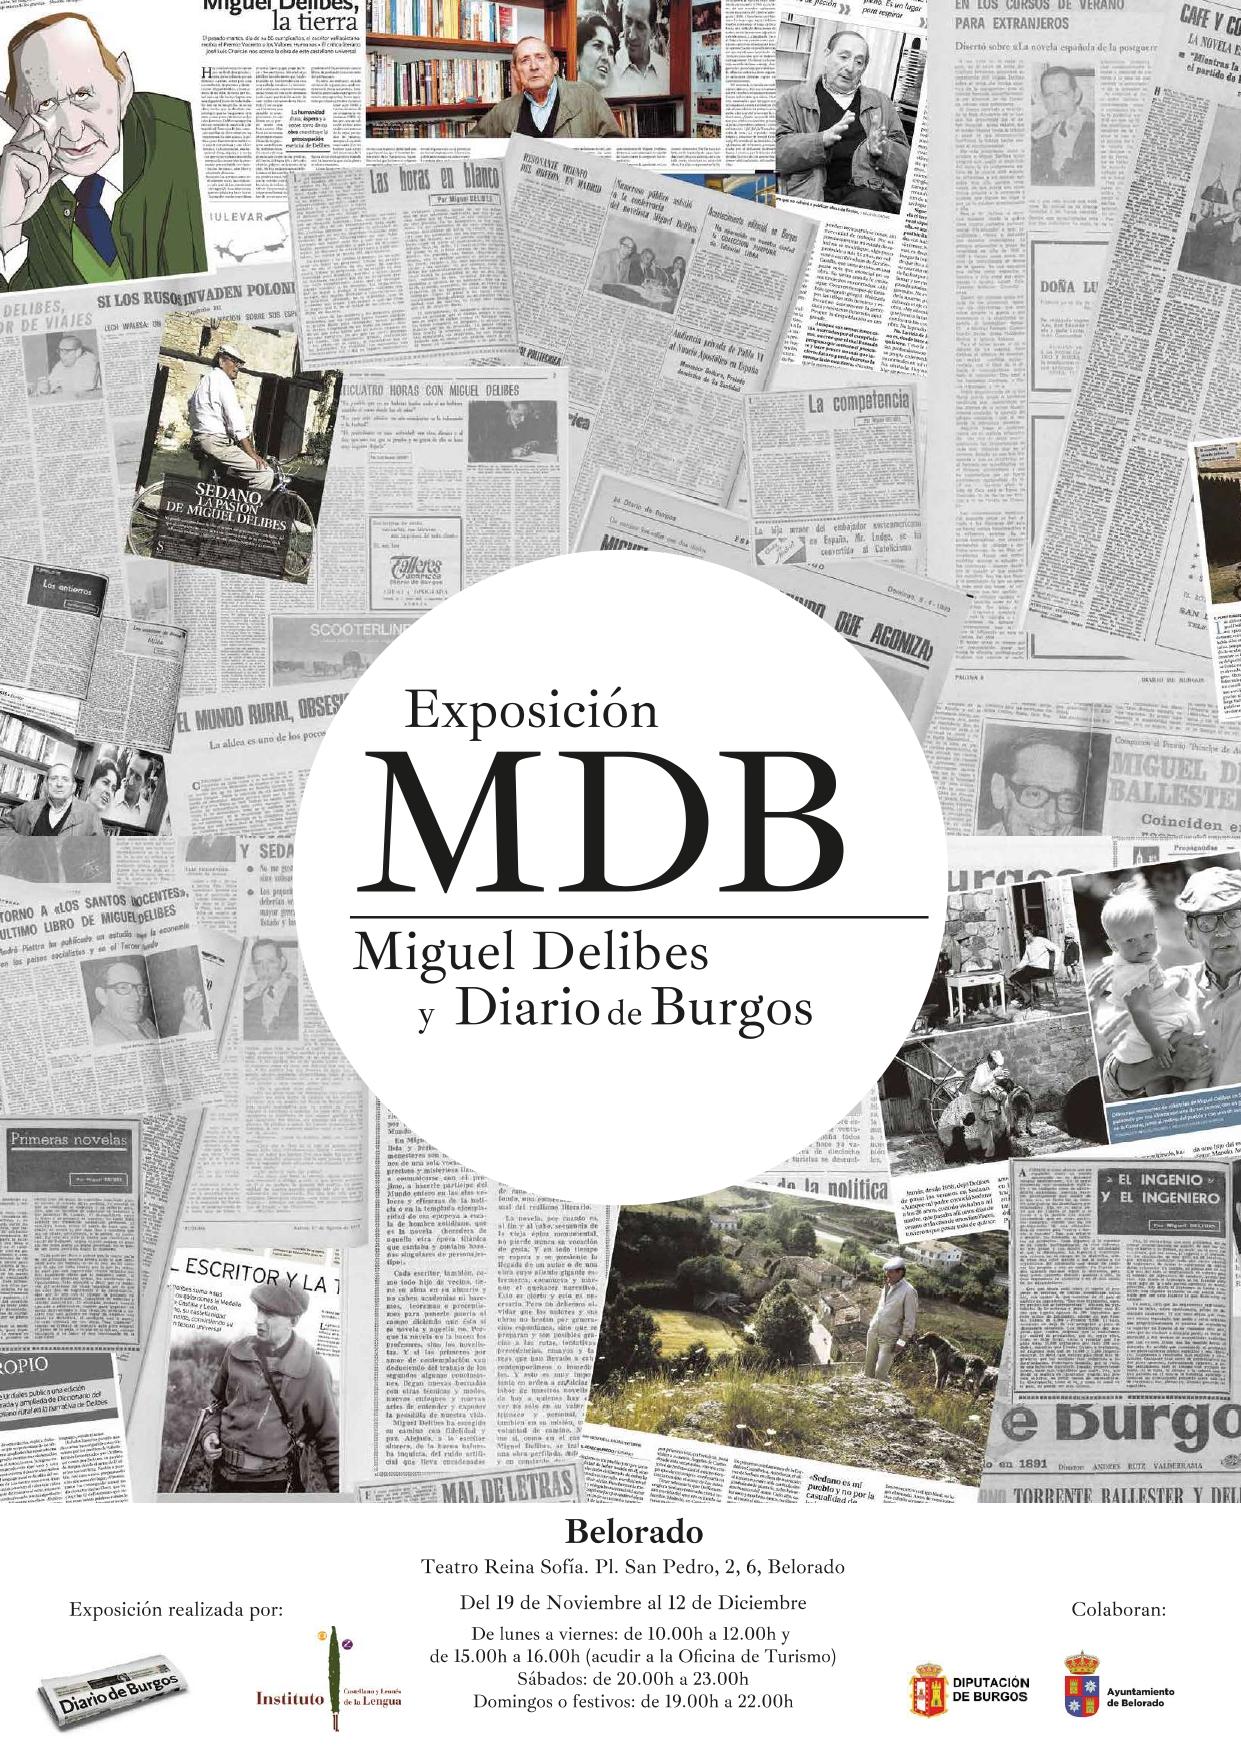 Exposición Miguel Delibes y Diario de Burgos